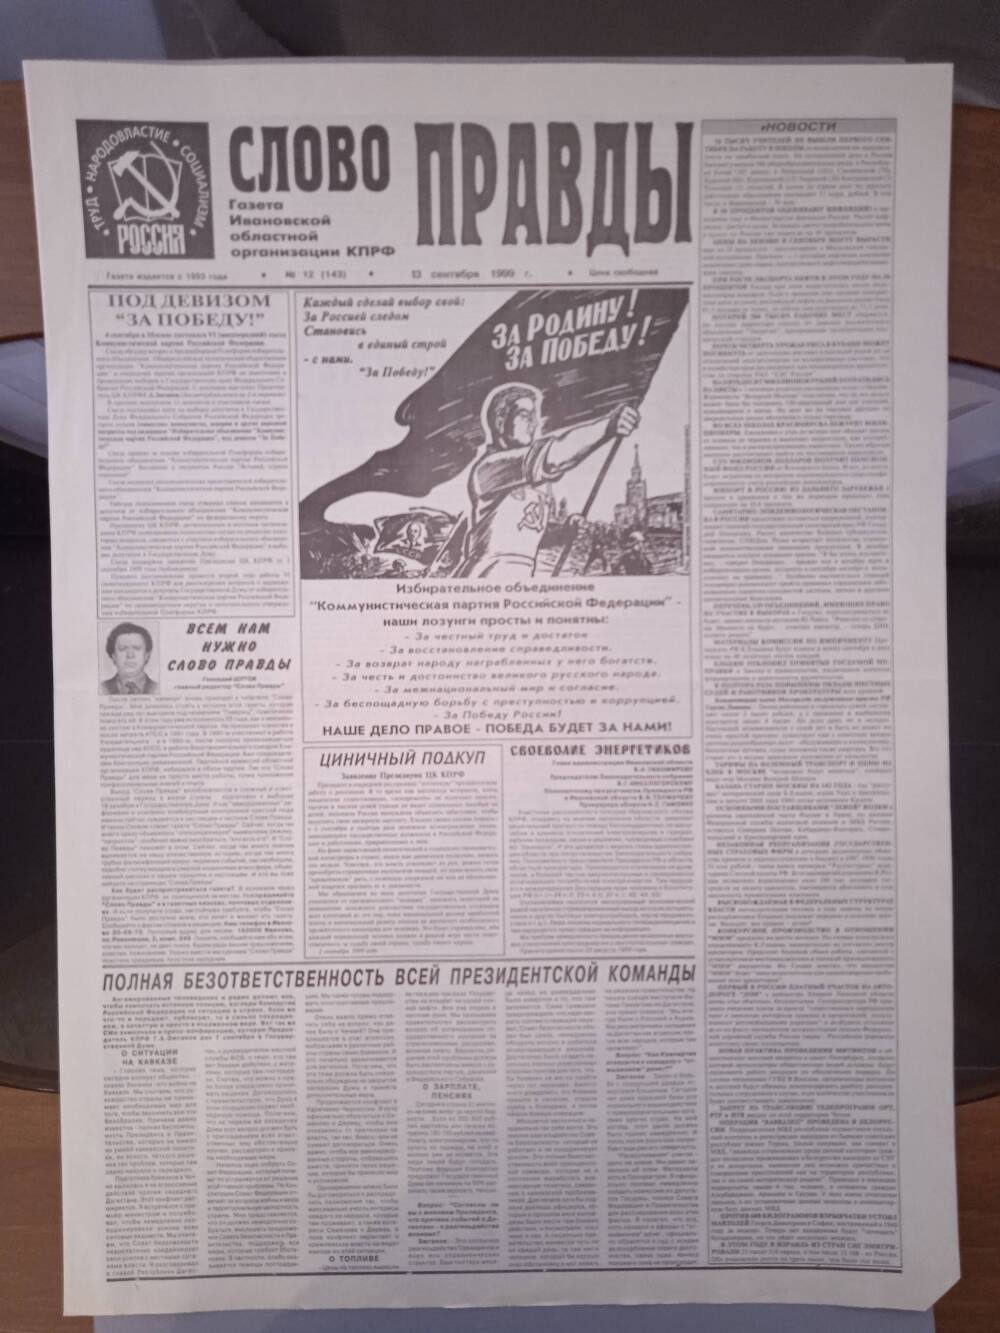 Газета «Слово Правды» № 12 от 13 сентября 1999 г. изд-е Ивановской обл. организации КПРФ.